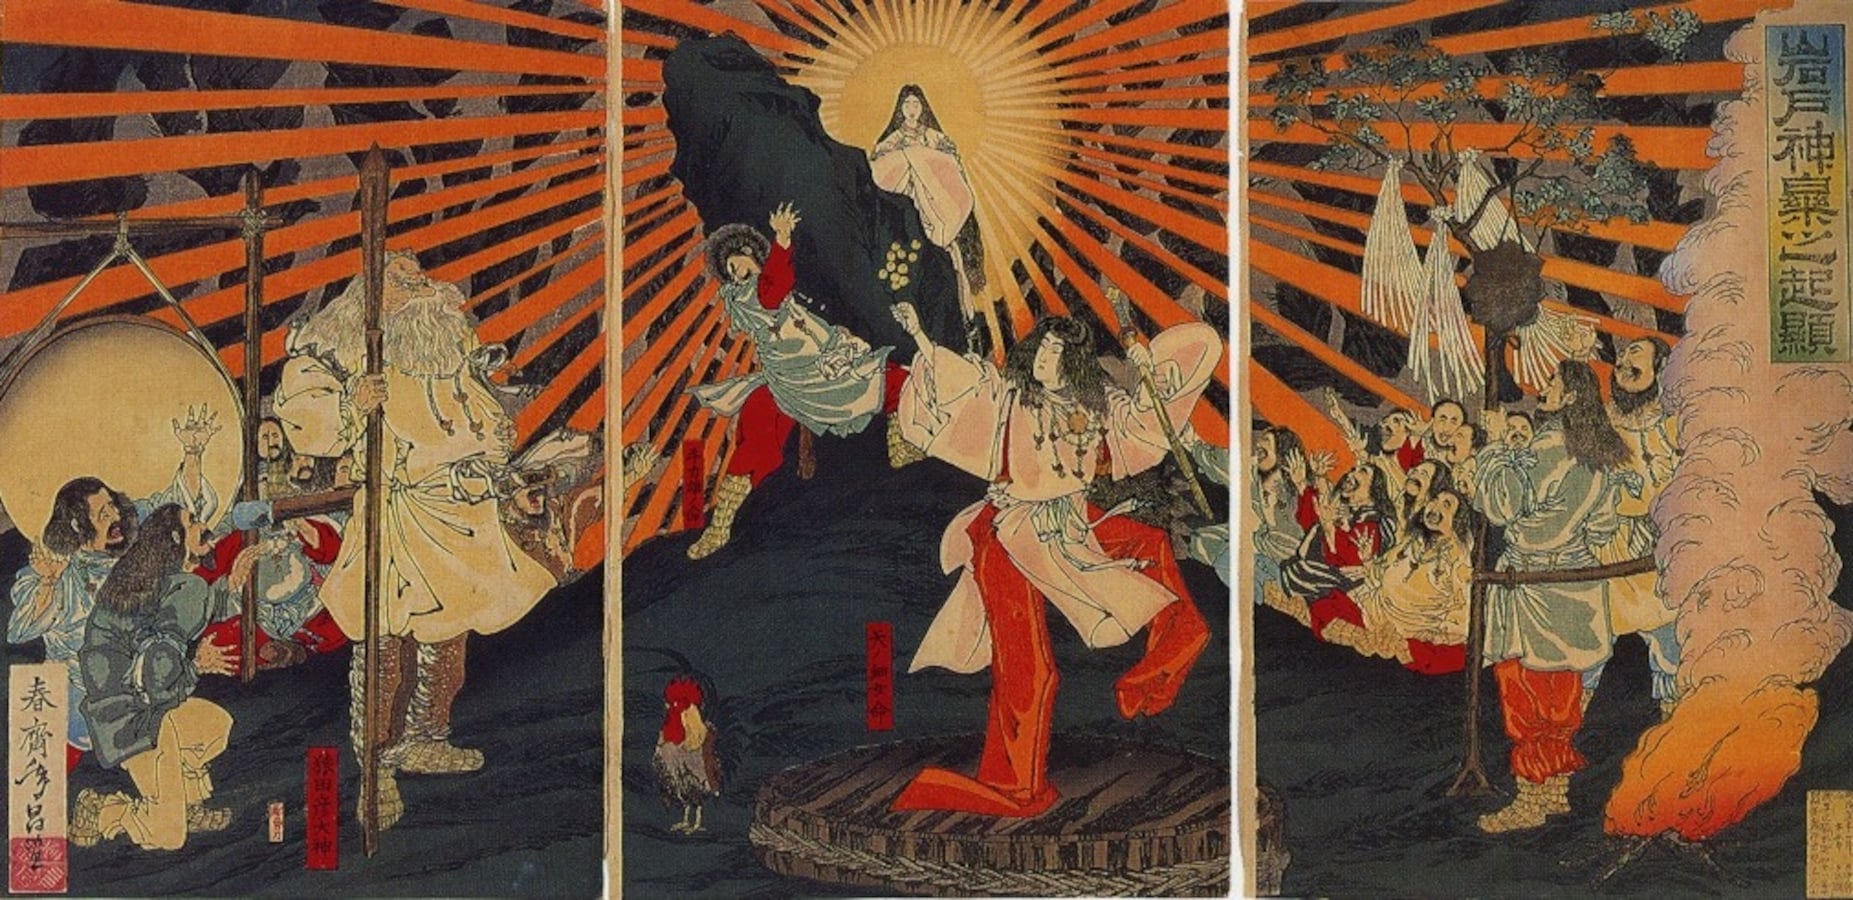 12 Major Japanese Gods and Goddesses